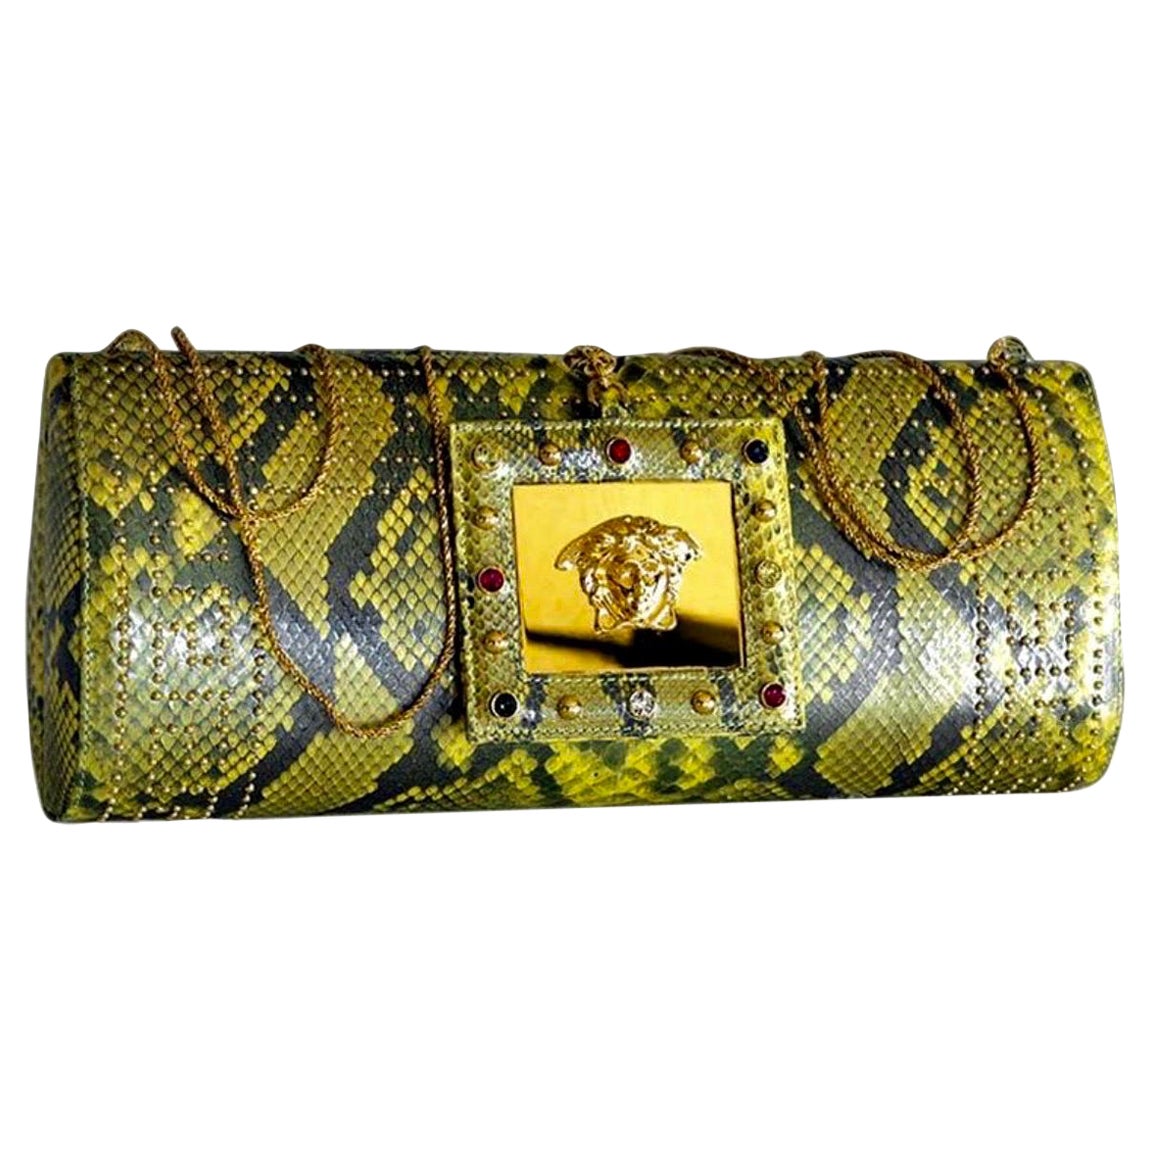 S/S 2000 Vintage Gianni Versace Runway Embellished Python Clutch Bag For Sale